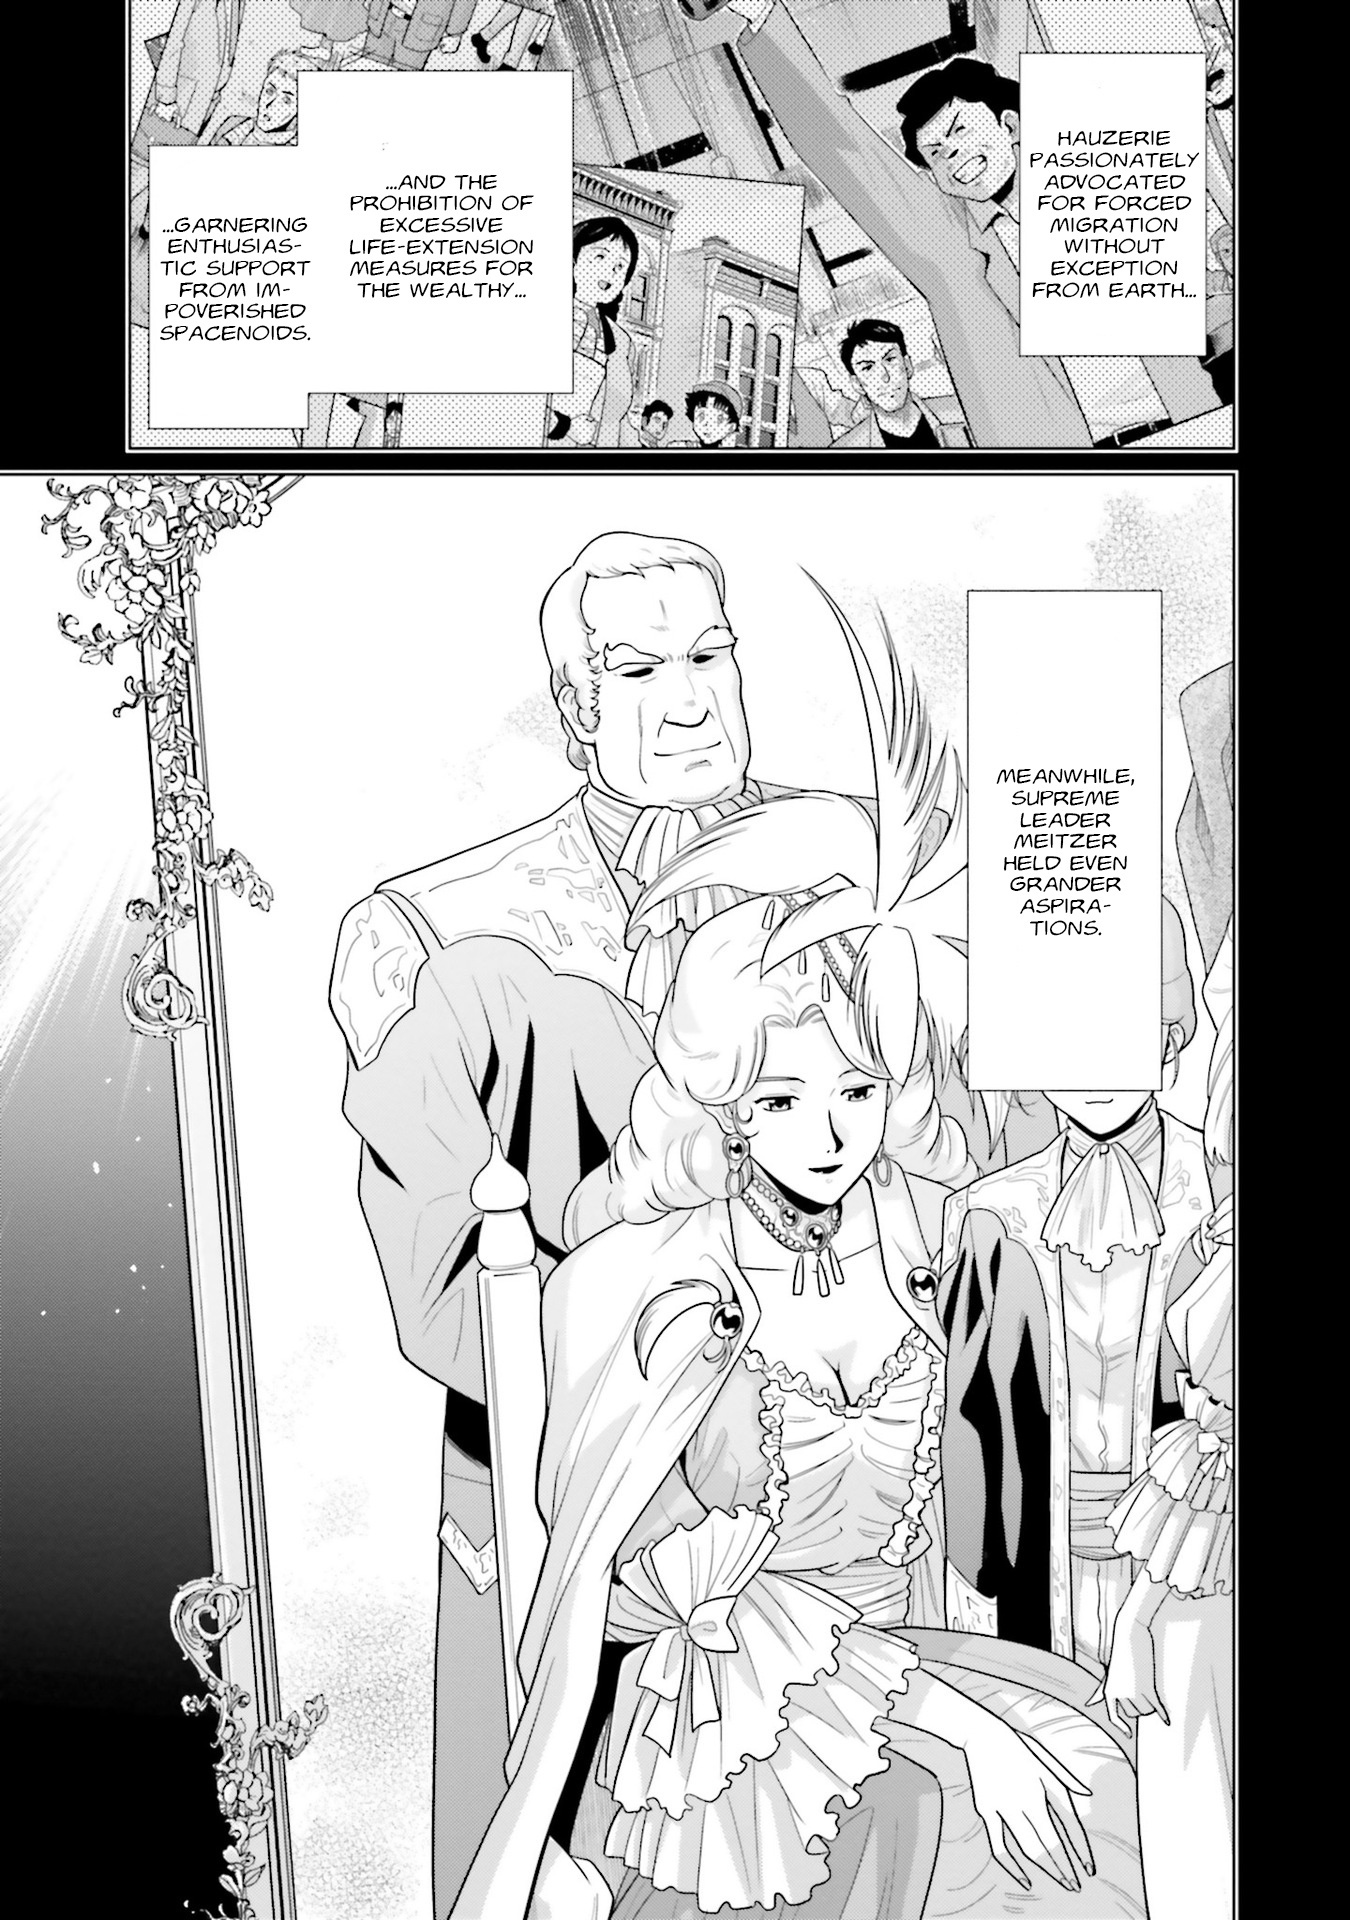 Mobile Suit Gundam F90 Ff Vol.7 Chapter 25: Ideals, A Seductive Flower That Demands Blood - Picture 3